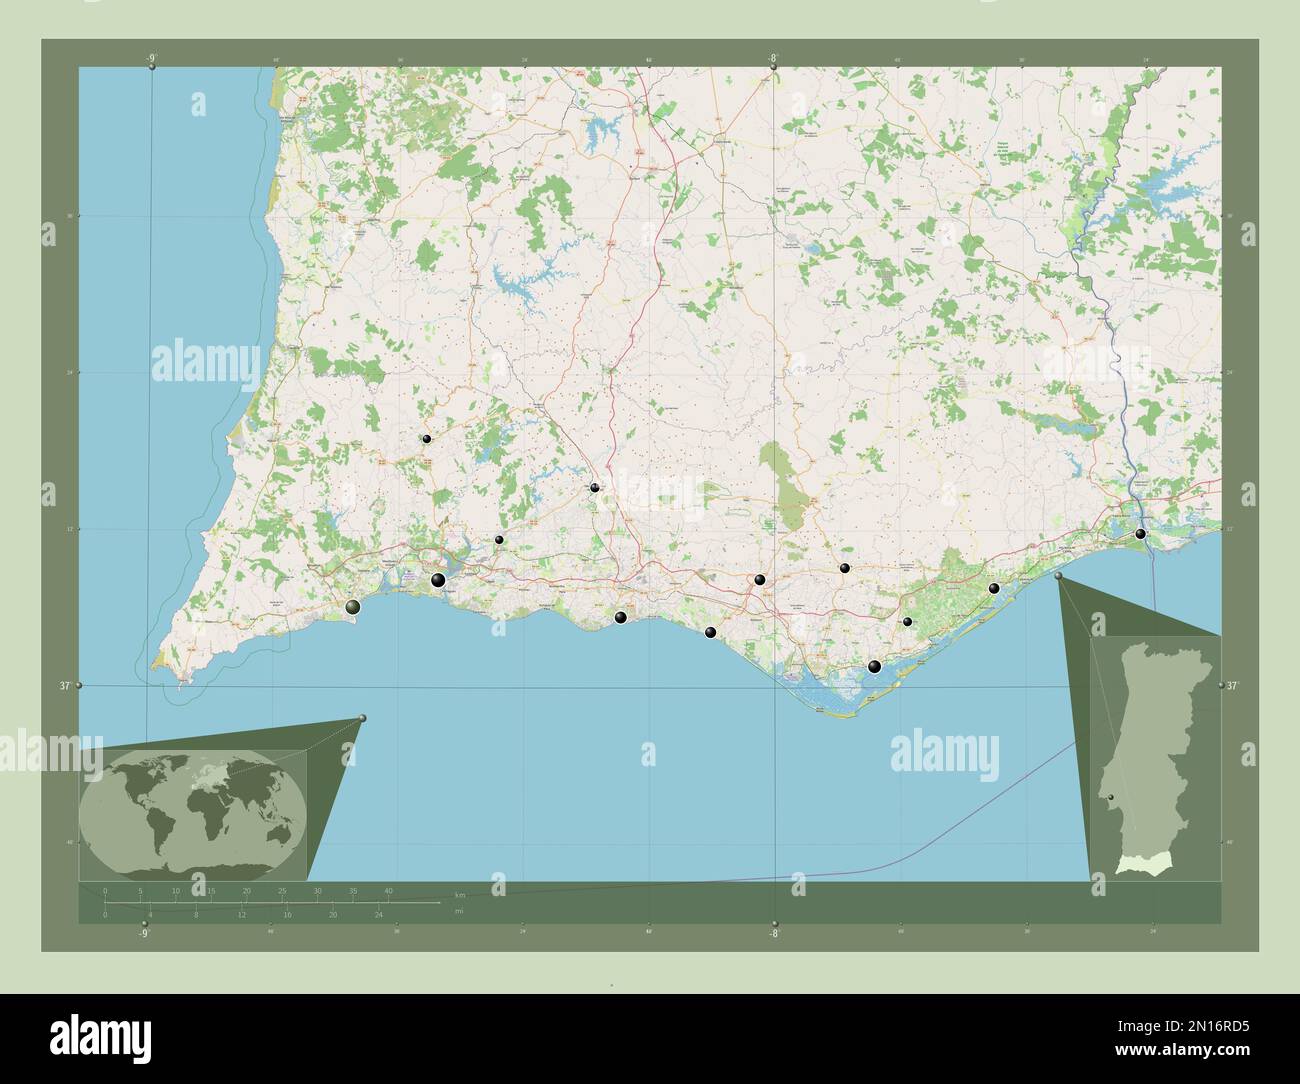 Faro, der Bezirk von Portugal. Straßenkarte Öffnen. Standorte der wichtigsten Städte der Region. Eckkarten für zusätzliche Standorte Stockfoto